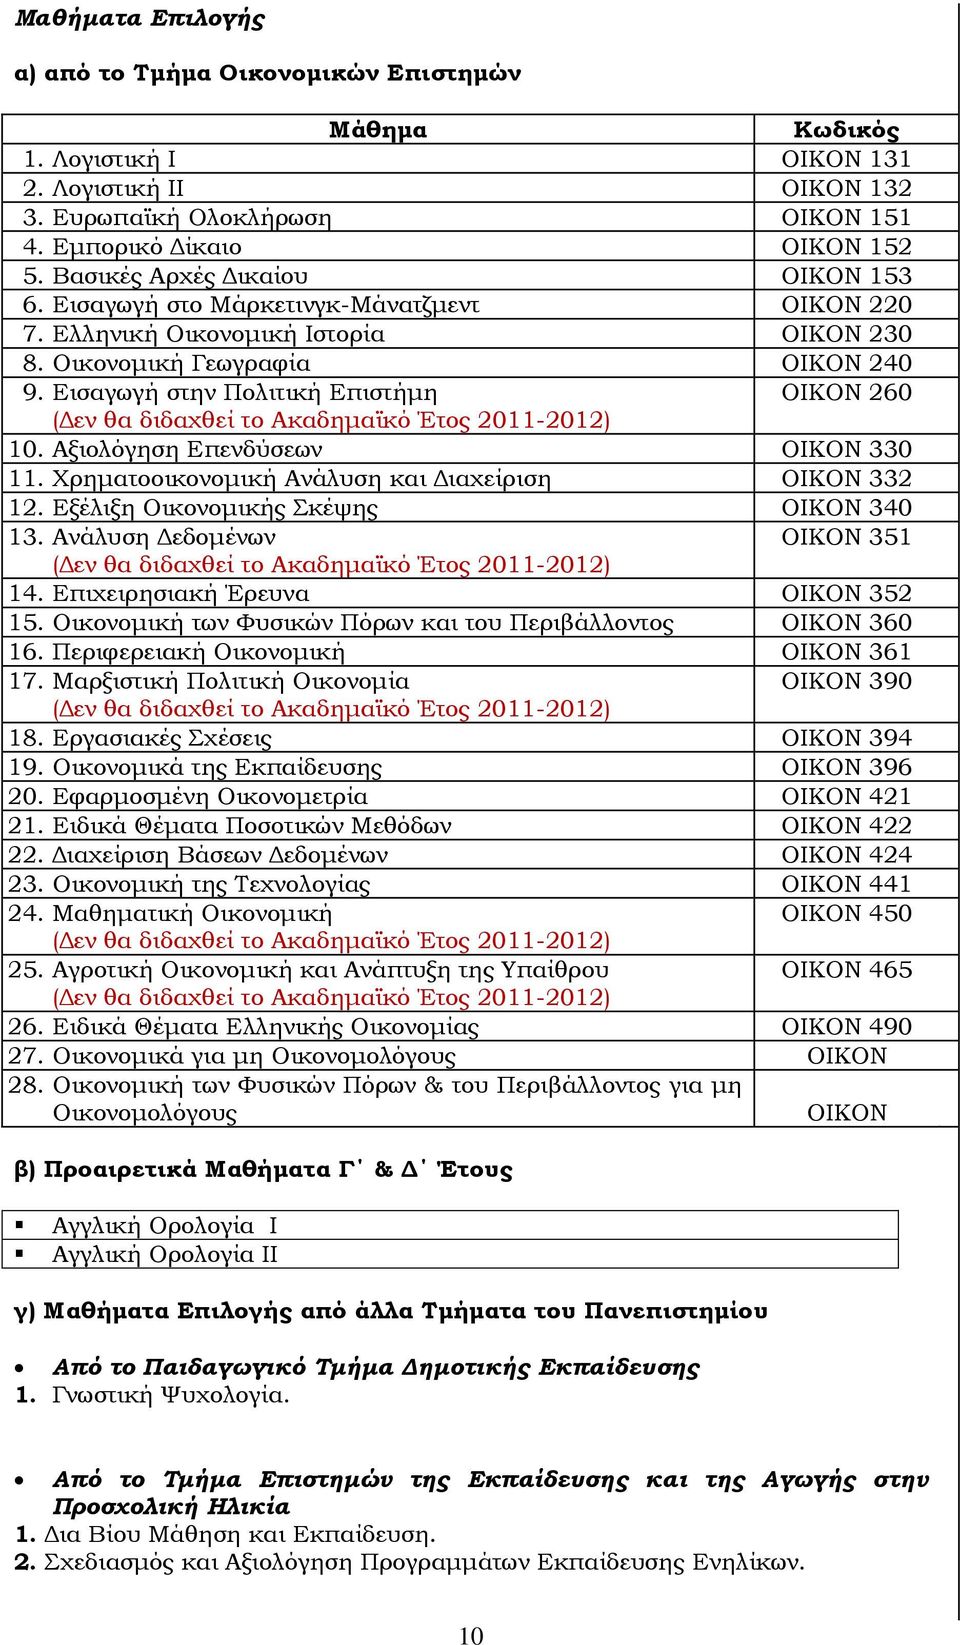 Εισαγωγή στην Πολιτική Επιστήμη ΟΙΚΟΝ 260 (Δεν θα διδαχθεί το Ακαδημαϊκό Έτος 2011-2012) 10. Αξιολόγηση Επενδύσεων ΟΙΚΟΝ 330 11. Χρηματοοικονομική Ανάλυση και Διαχείριση ΟΙΚΟΝ 332 12.